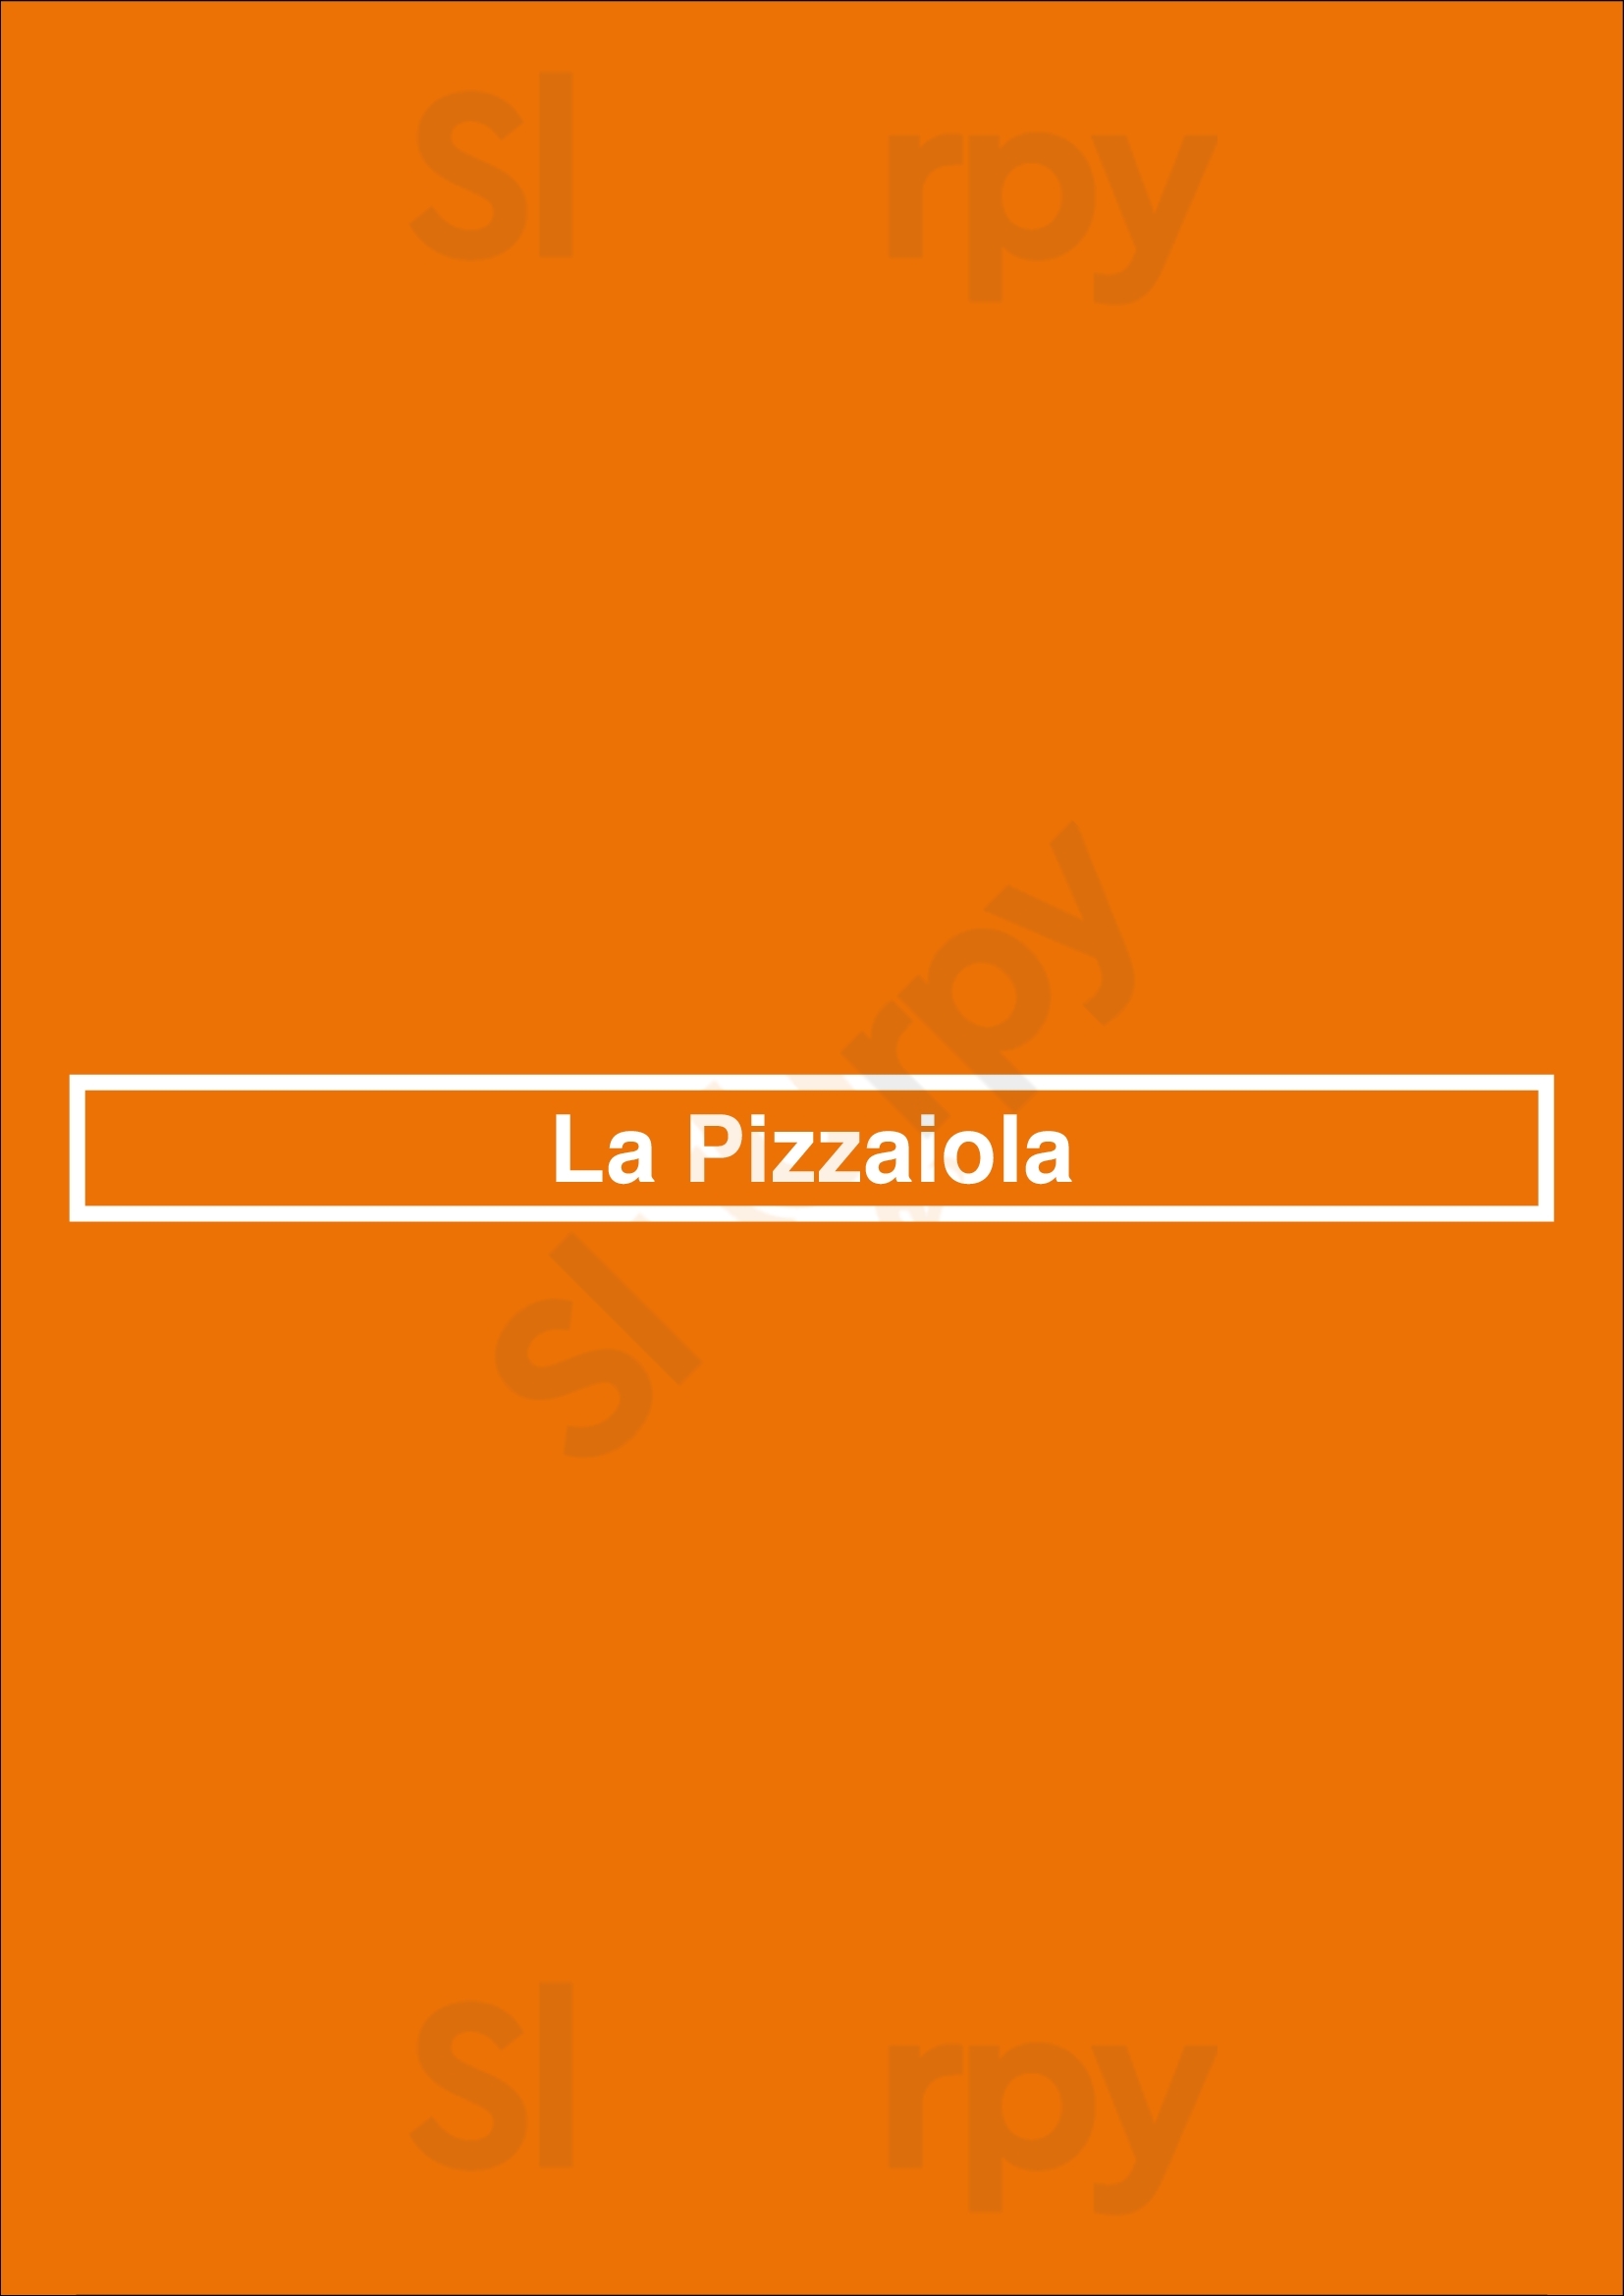 La Pizzaiola Kortenberg Menu - 1